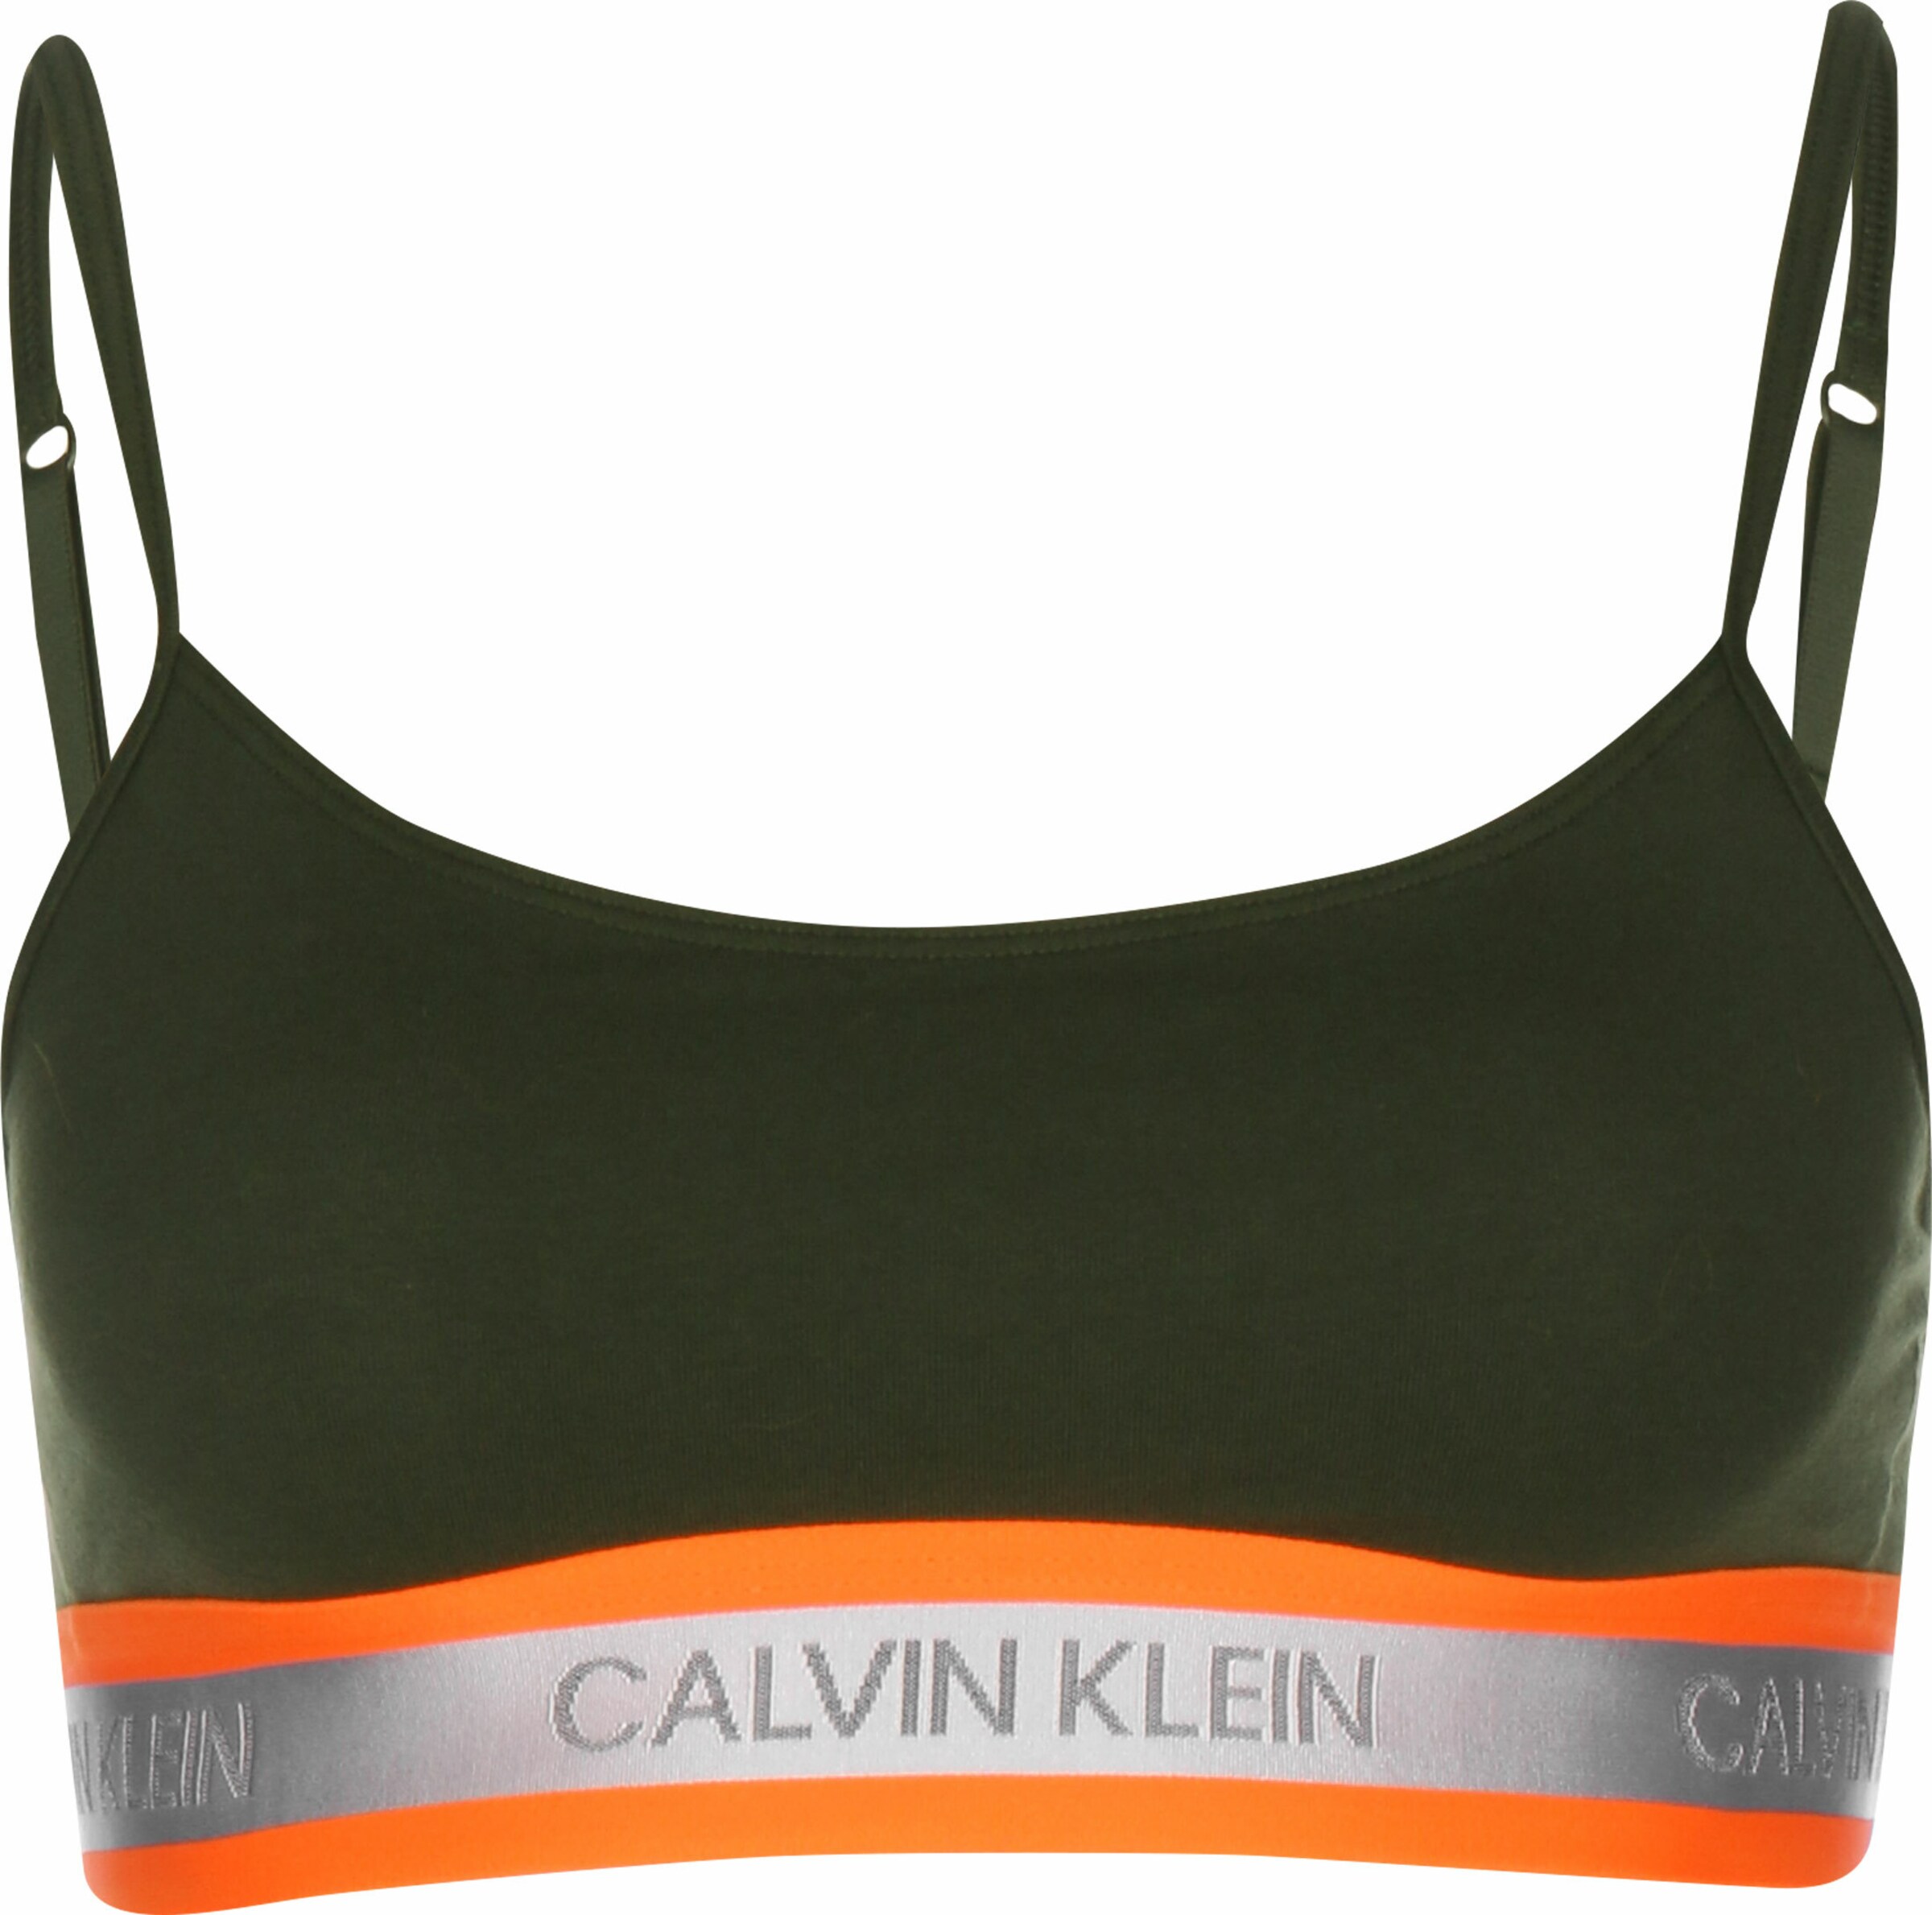 Vêtements Soutien-gorge W Calvin Klein Underwear en Mélange De Couleurs 